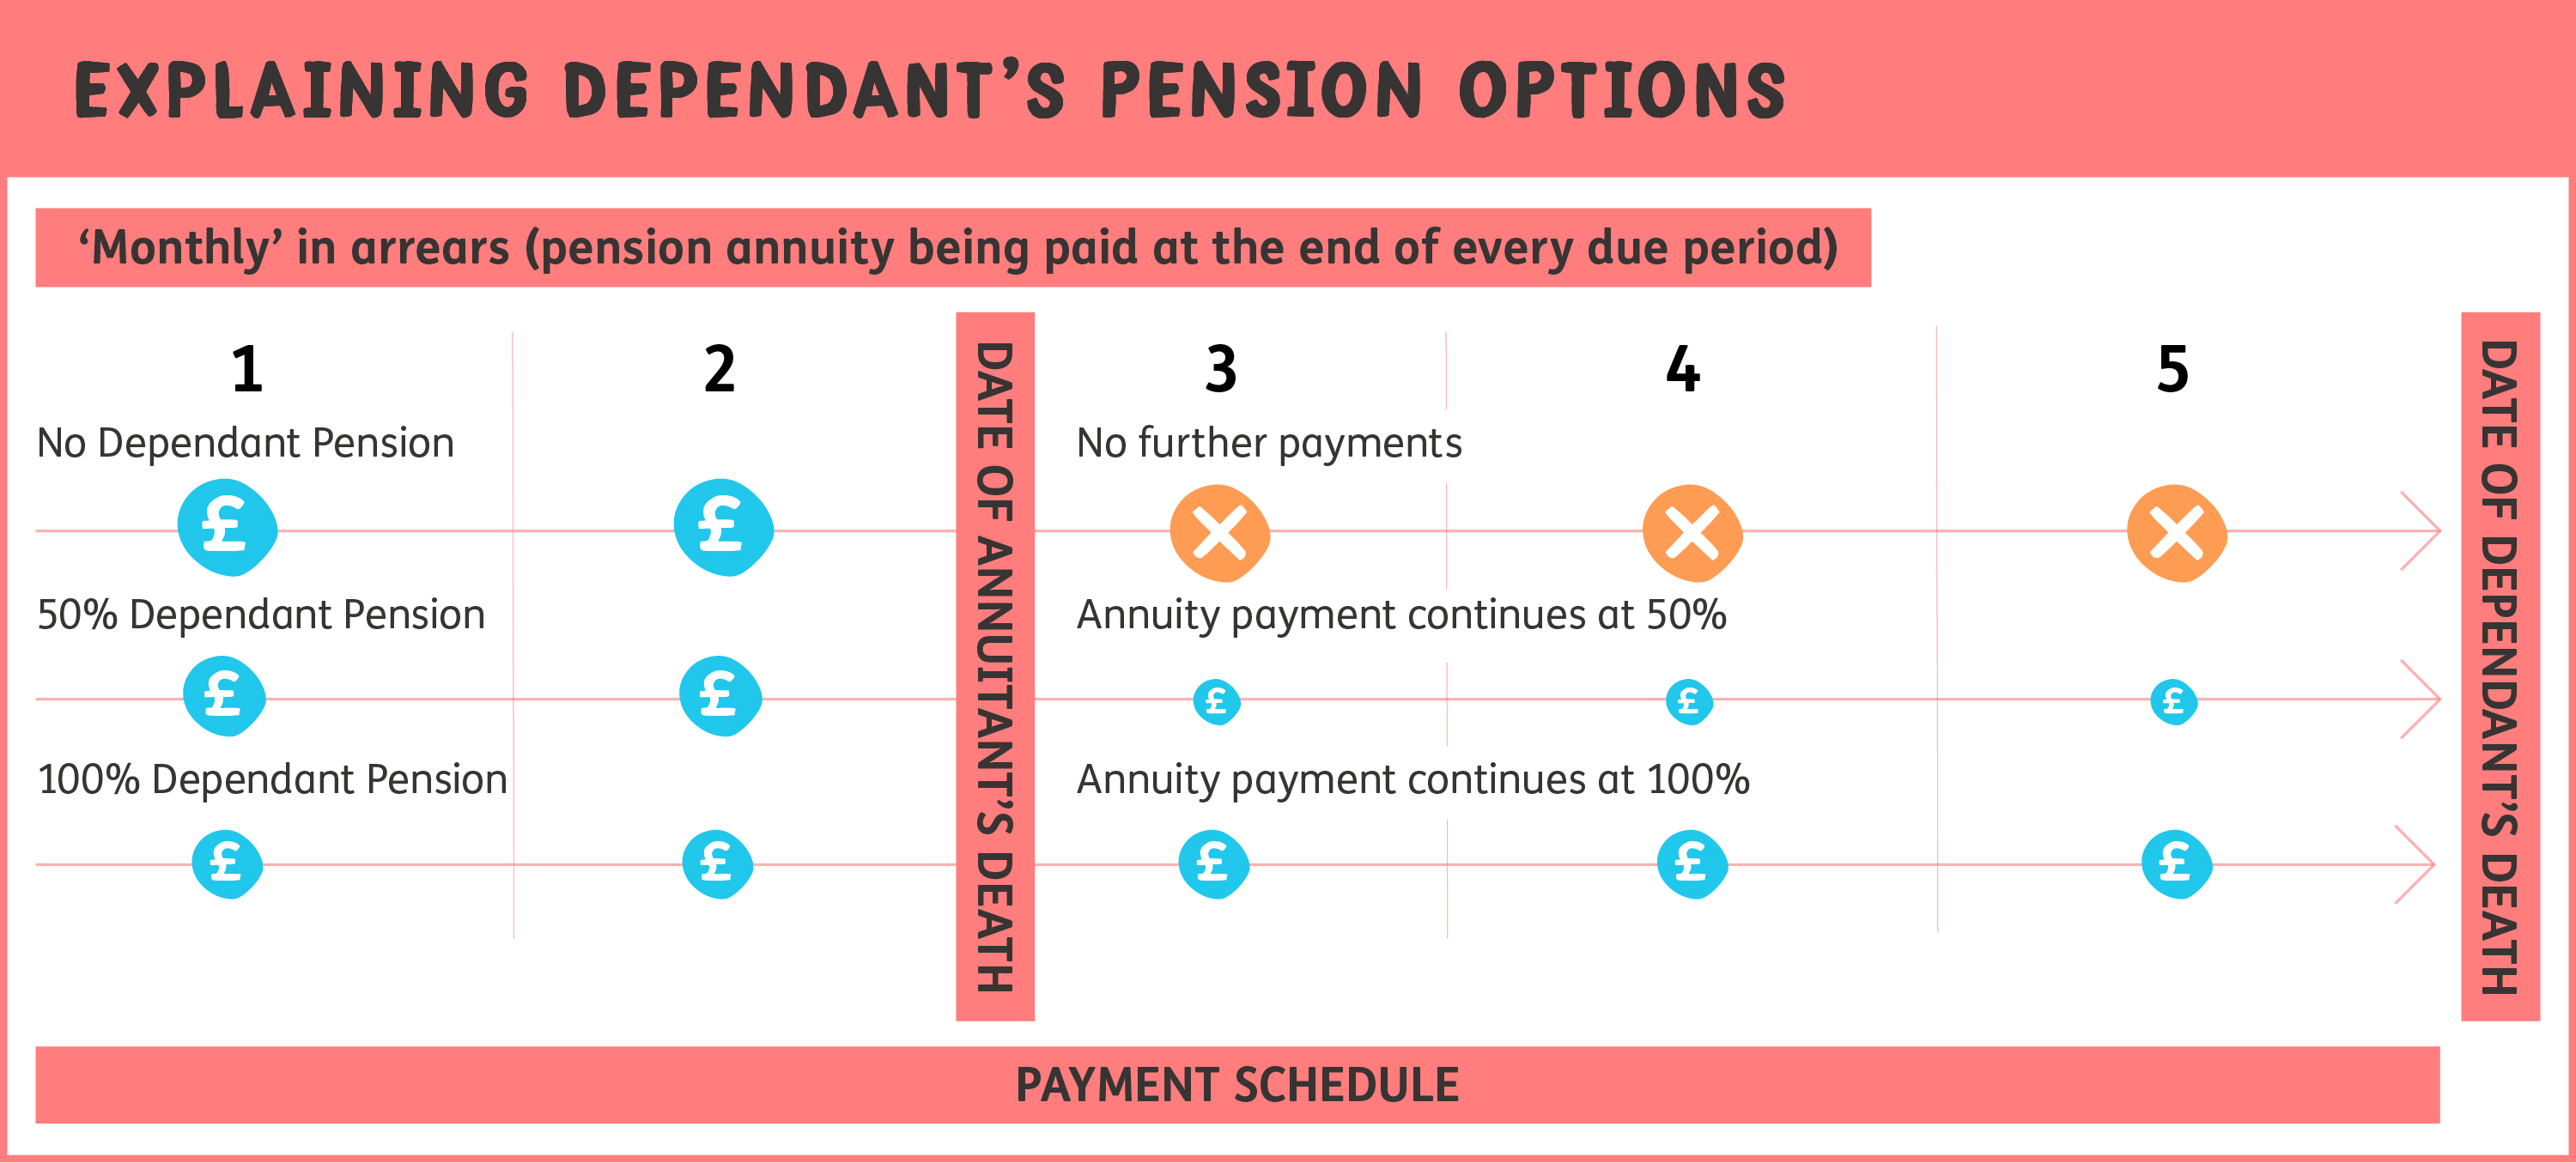 Explaining Dependant's Pension